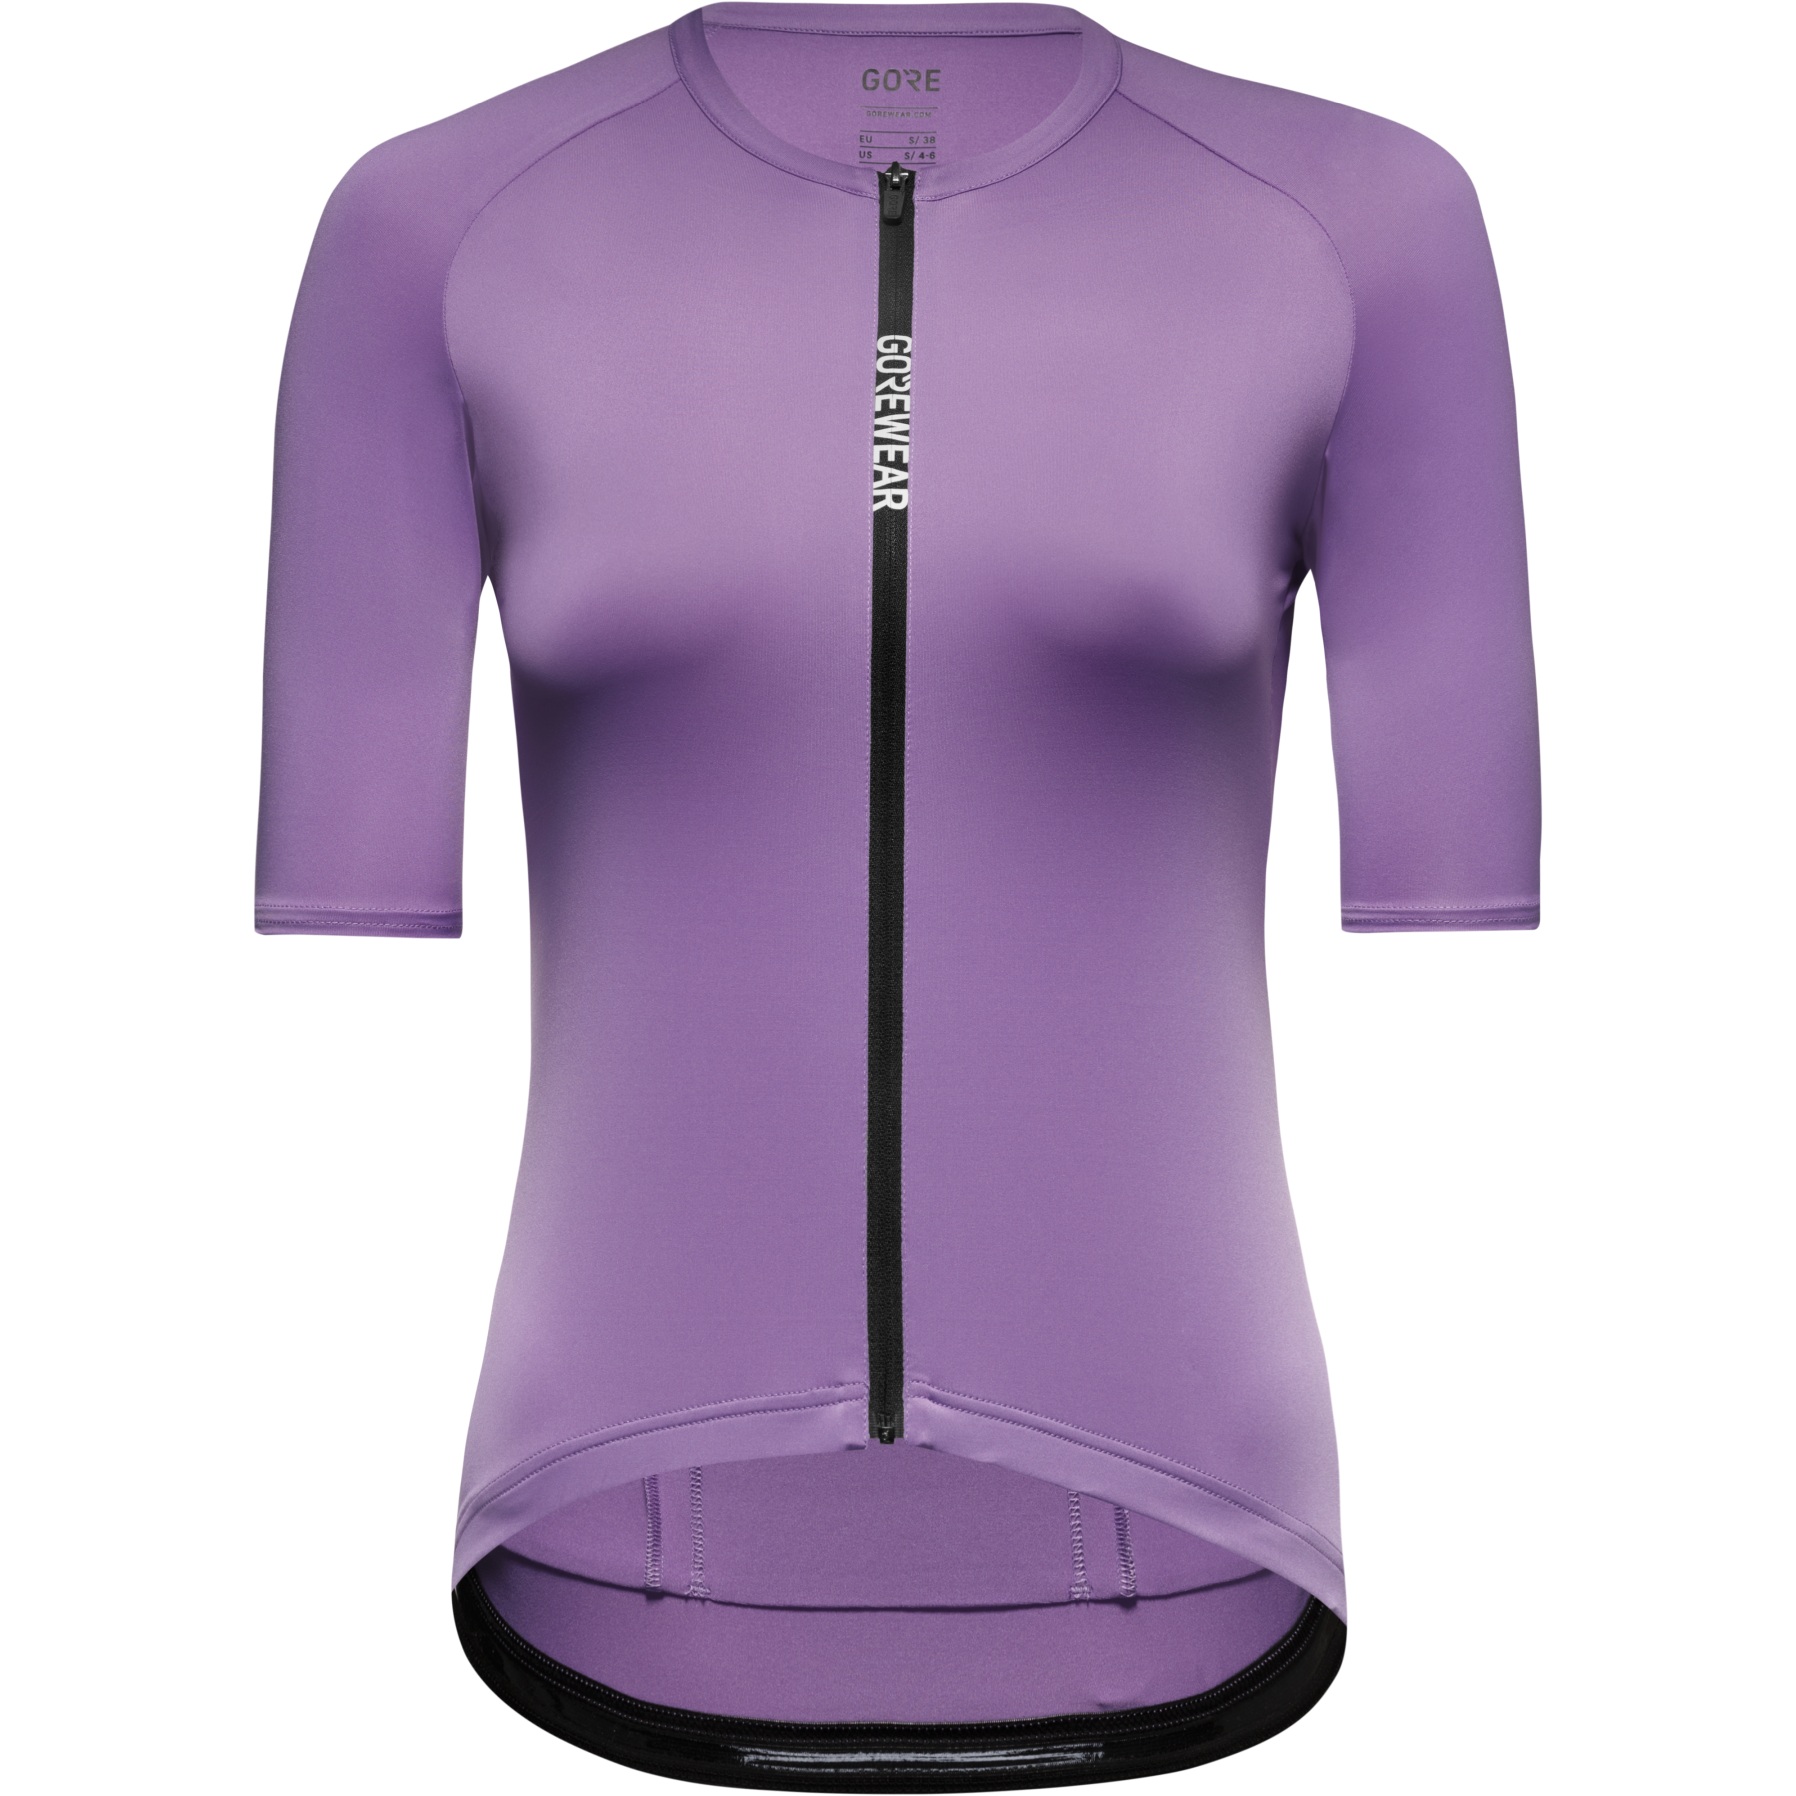 Produktbild von GOREWEAR Spinshift Kurzarm-Trikot Damen - scrub purple BX00